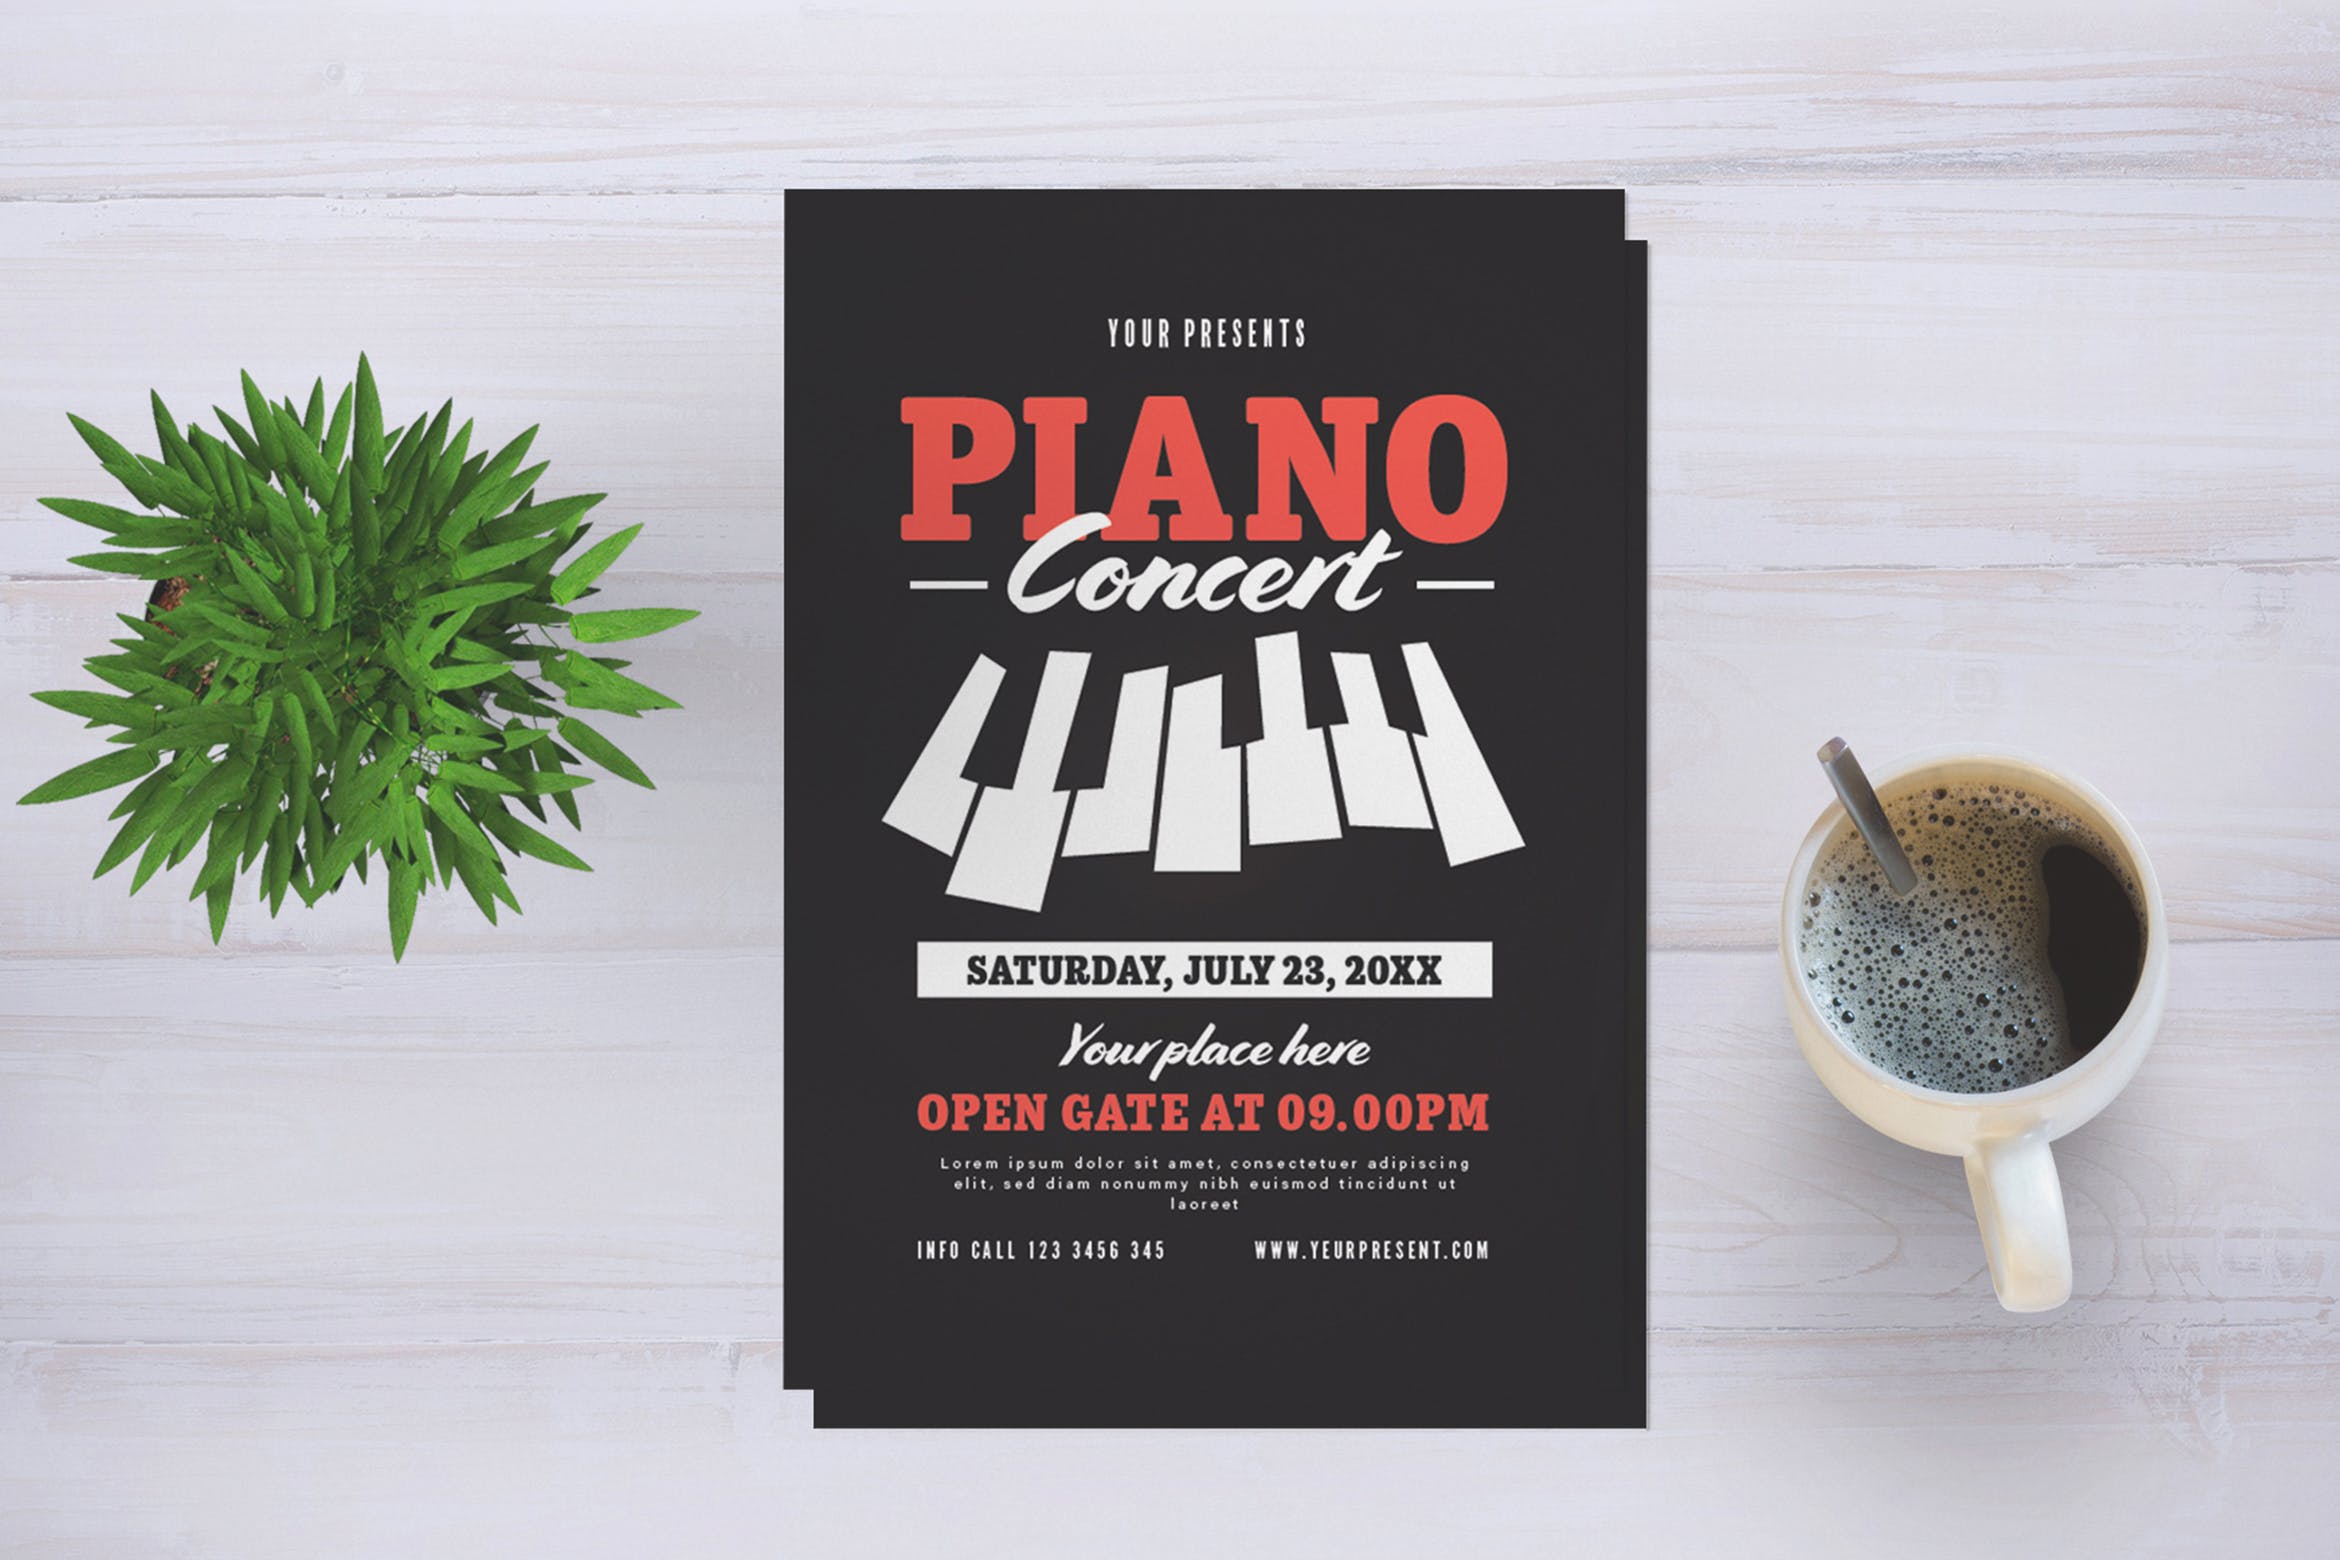 钢琴音乐会活动宣传海报传单设计模板 Piano Concert Flyer插图